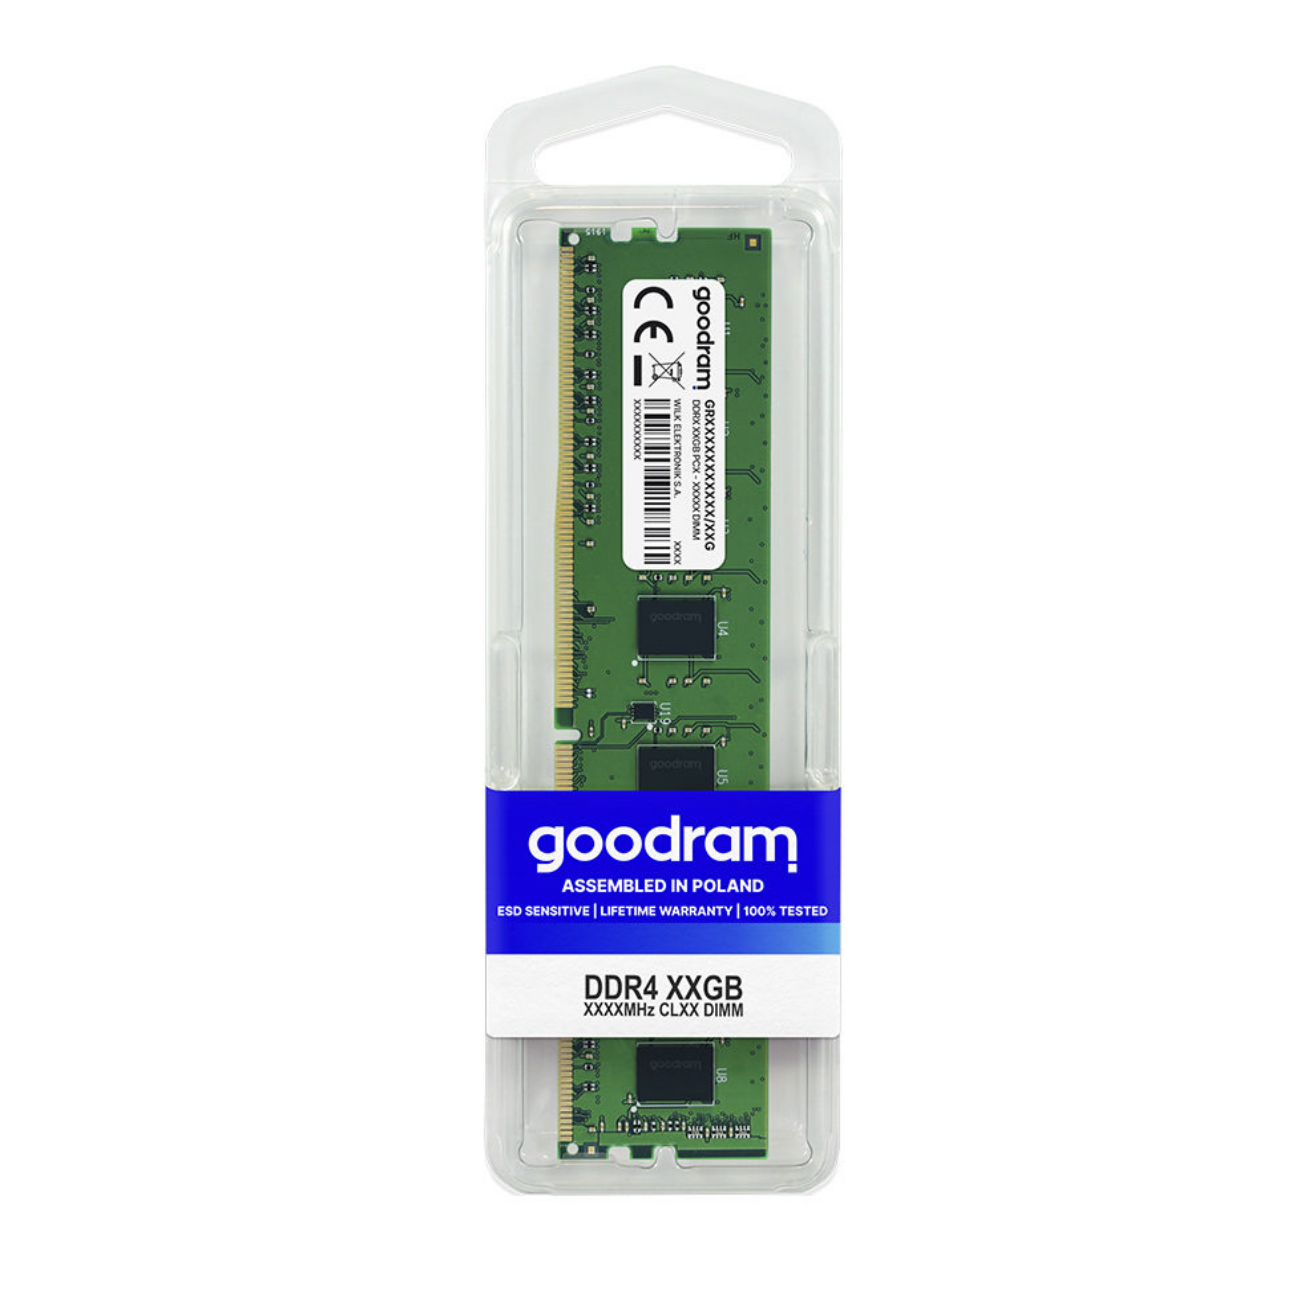 GOOD RAM 8 2400MHz Arbeitsspeicher DIMM DDR4 GB CL17 8GB